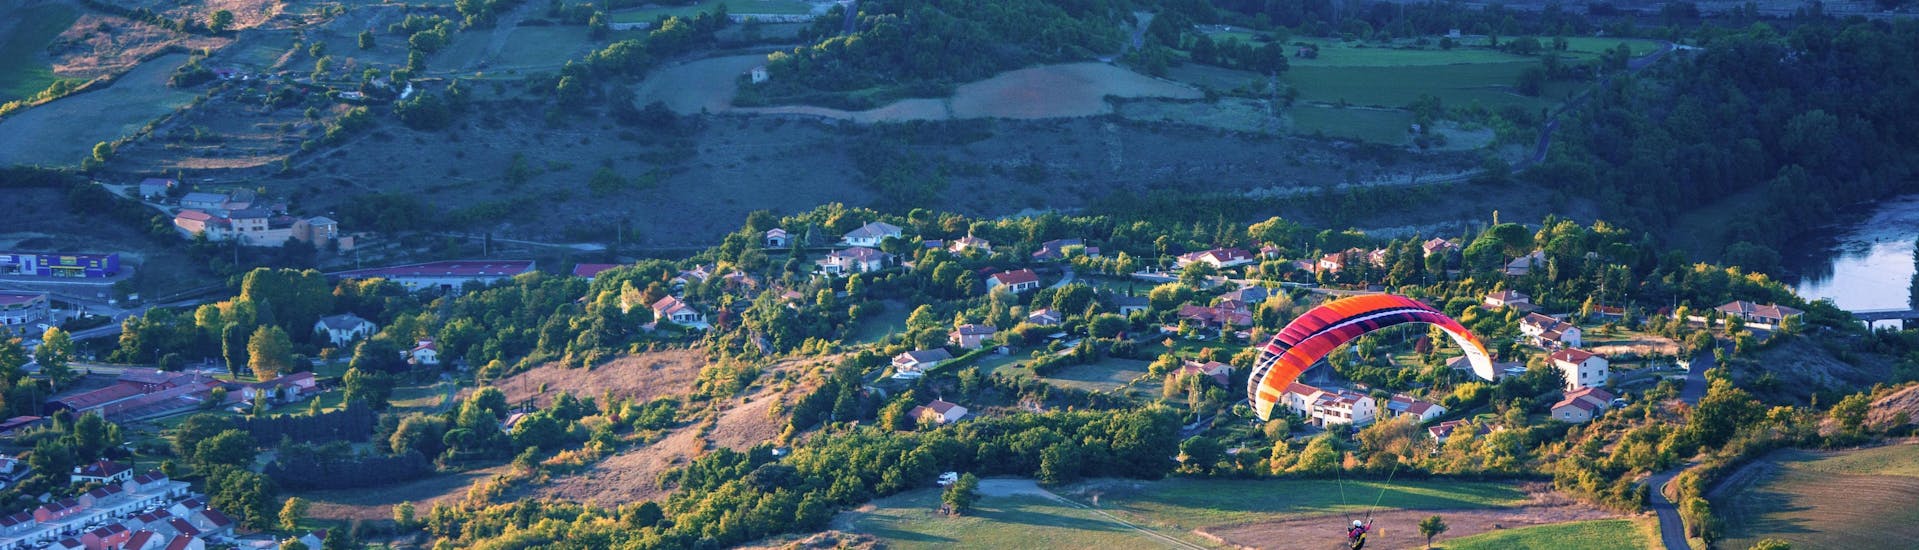 Grands Causses (regionaal natuurpark): Een tandemvlucht vindt plaats in een van de hotspots voor paragliding.